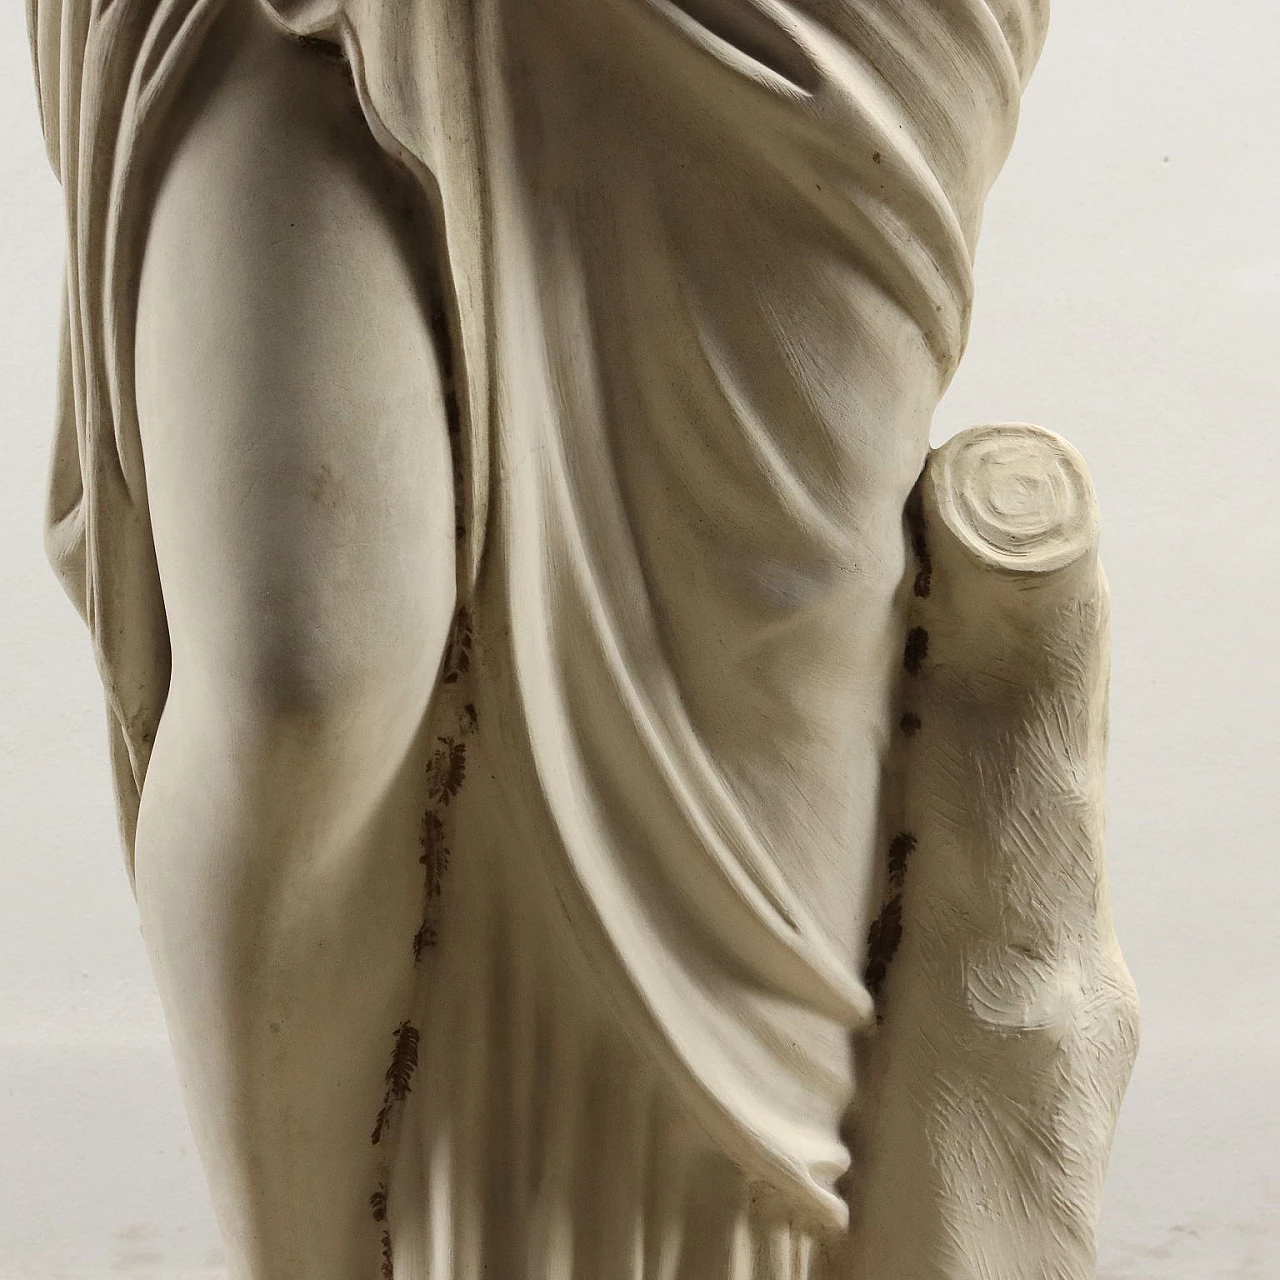 Dal Torrione, Venere alla fonte, statua in marmo sintetico 10